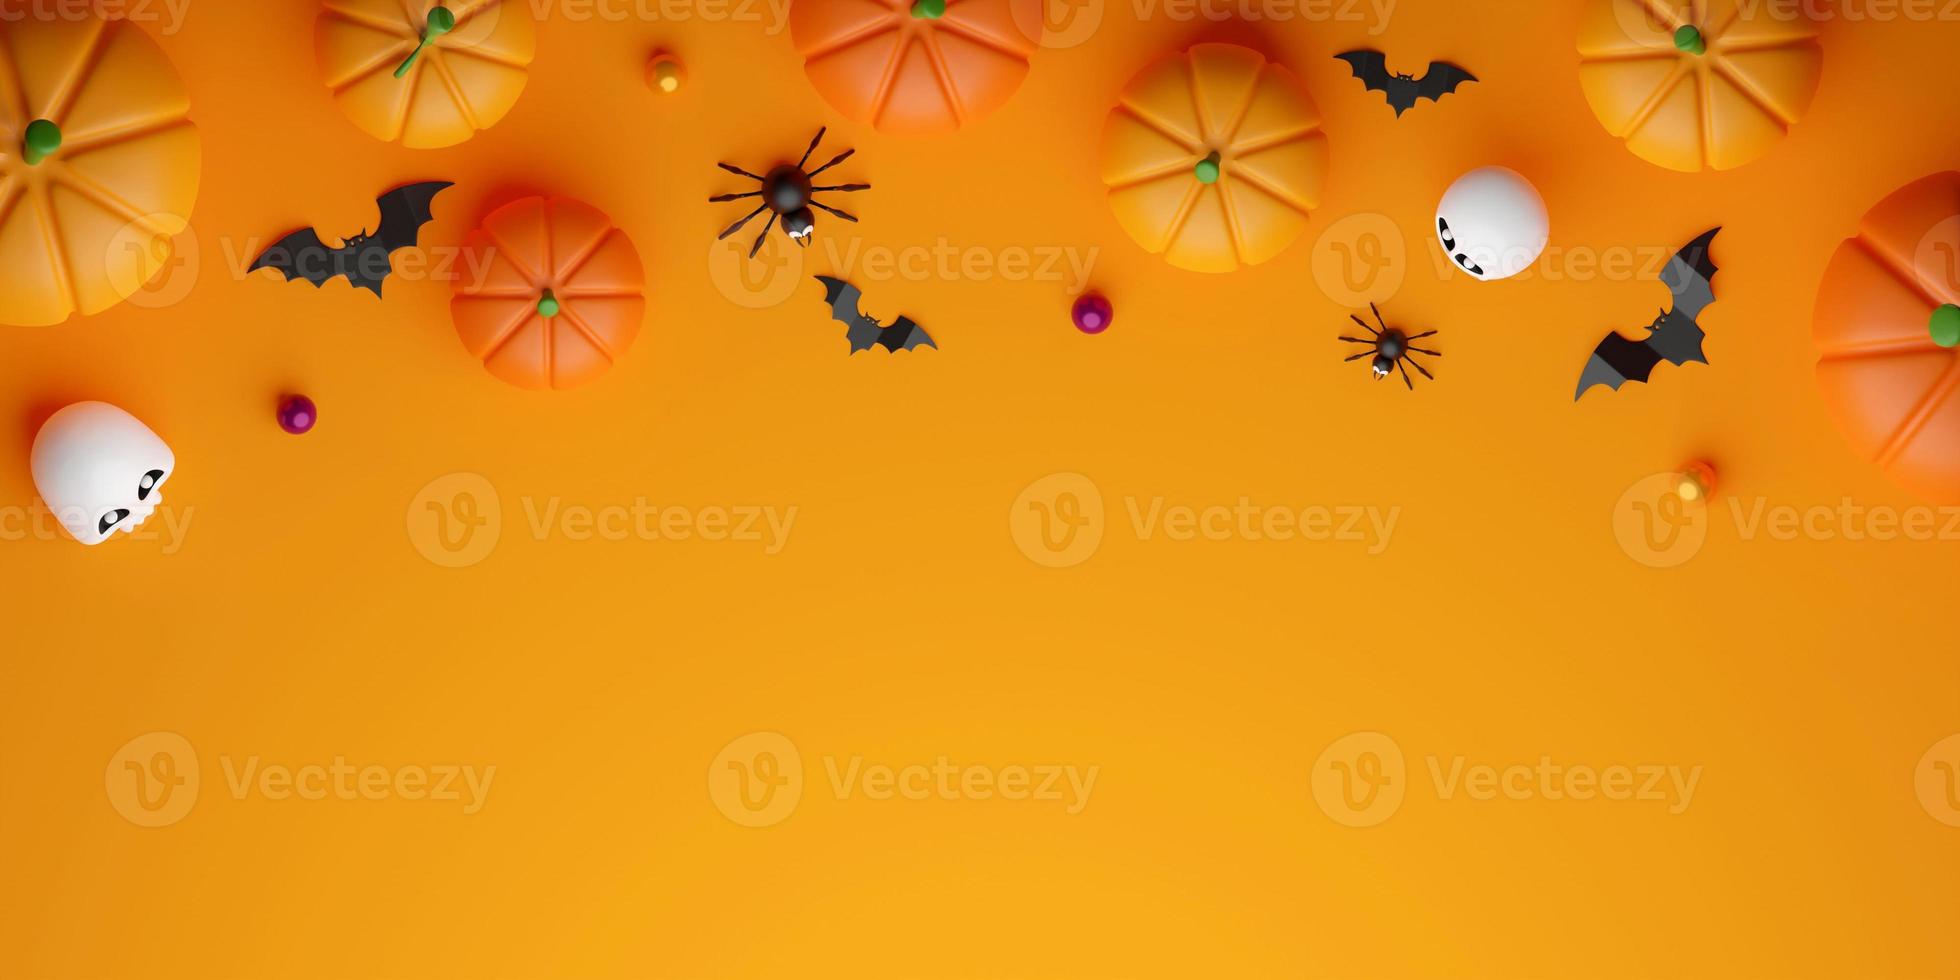 vue de dessus bannière d'illustration 3d du concept d'halloween heureux photo